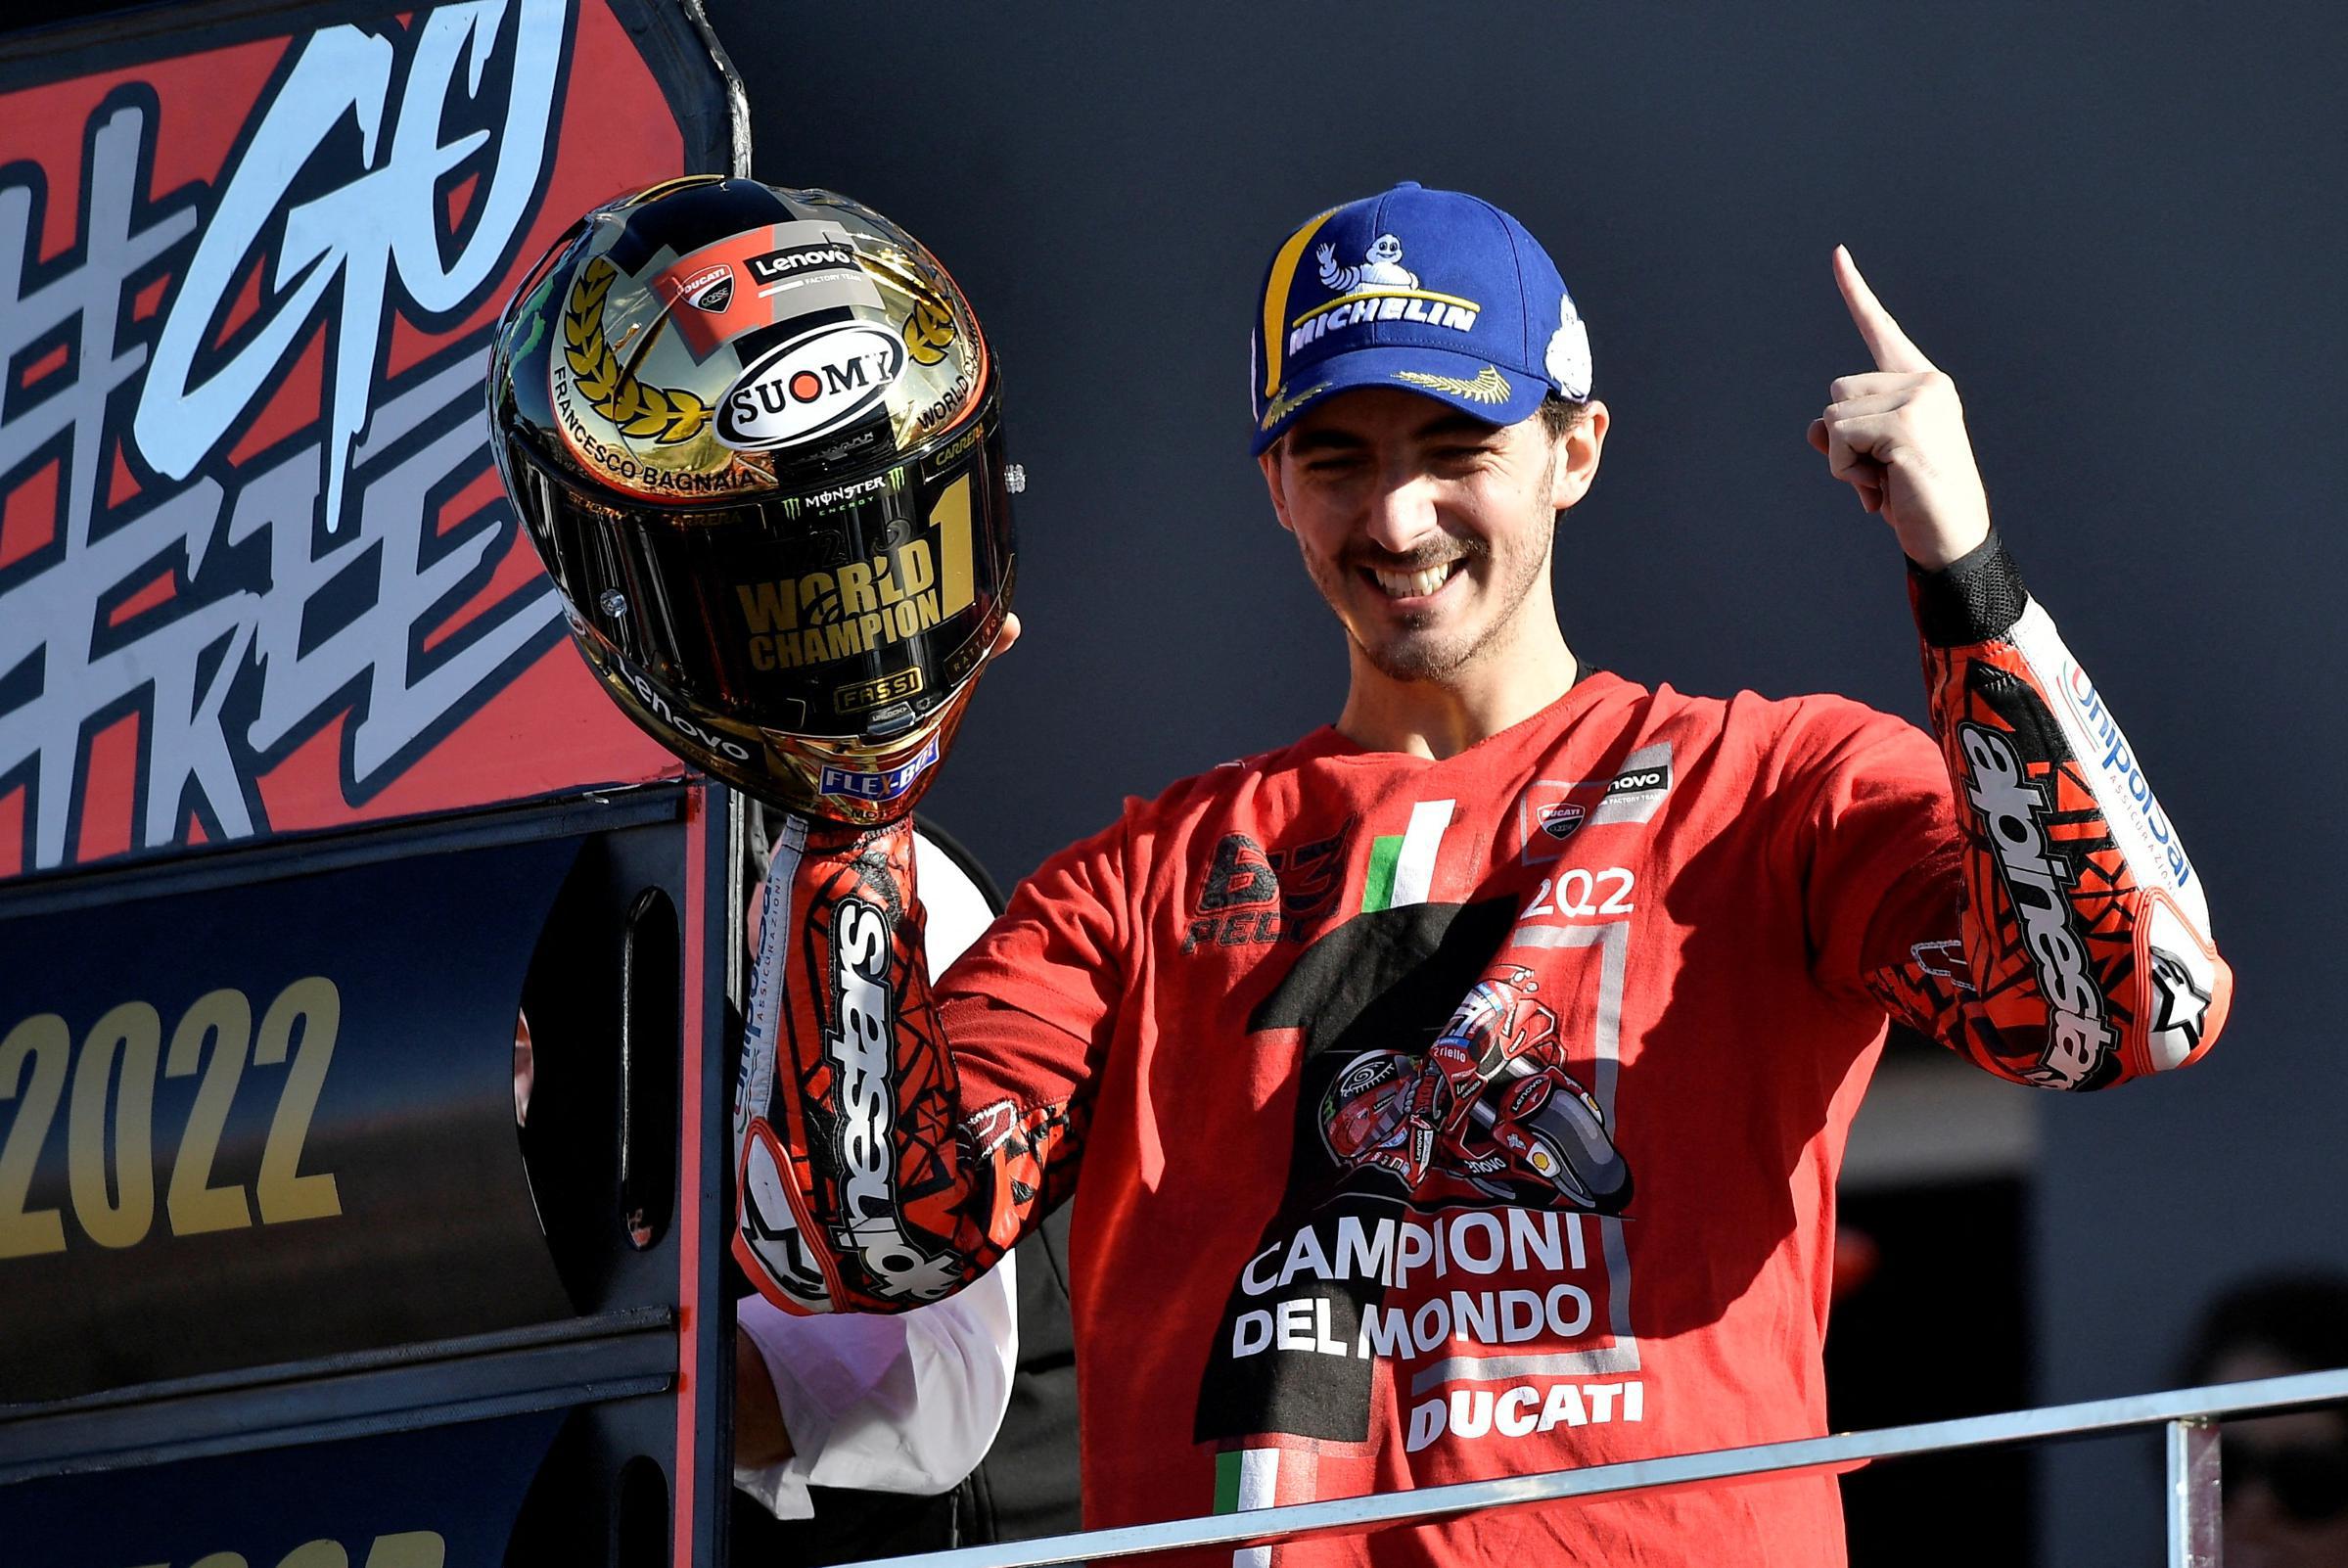 La prossima tappa per Valentino Rossi è l’Italia: Francesco Bagnaia si laurea campione del mondo in MotoGP dopo 13 anni.